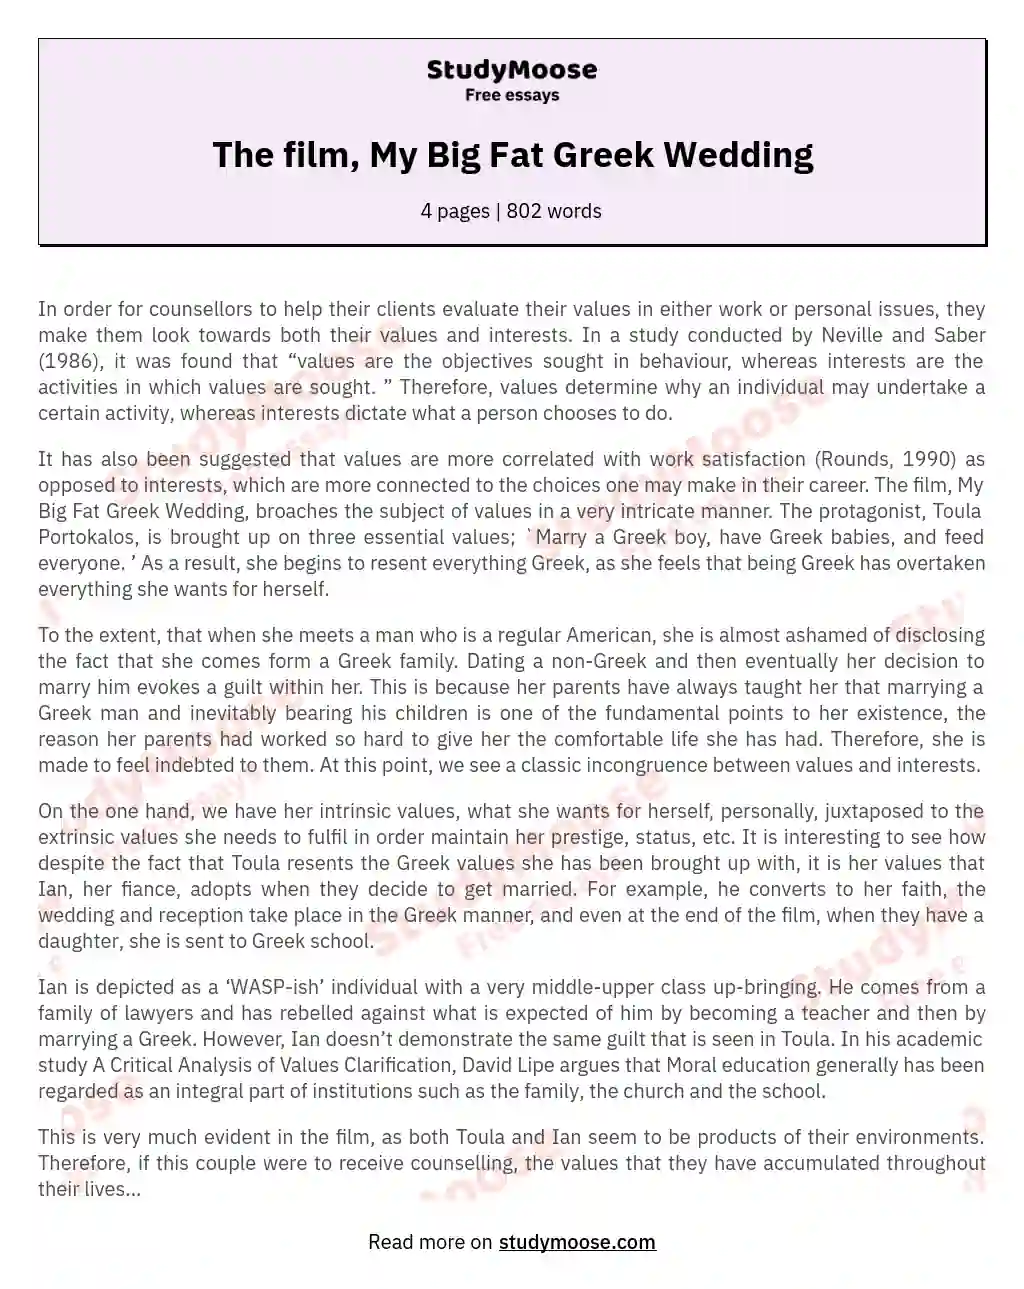 The film, My Big Fat Greek Wedding essay